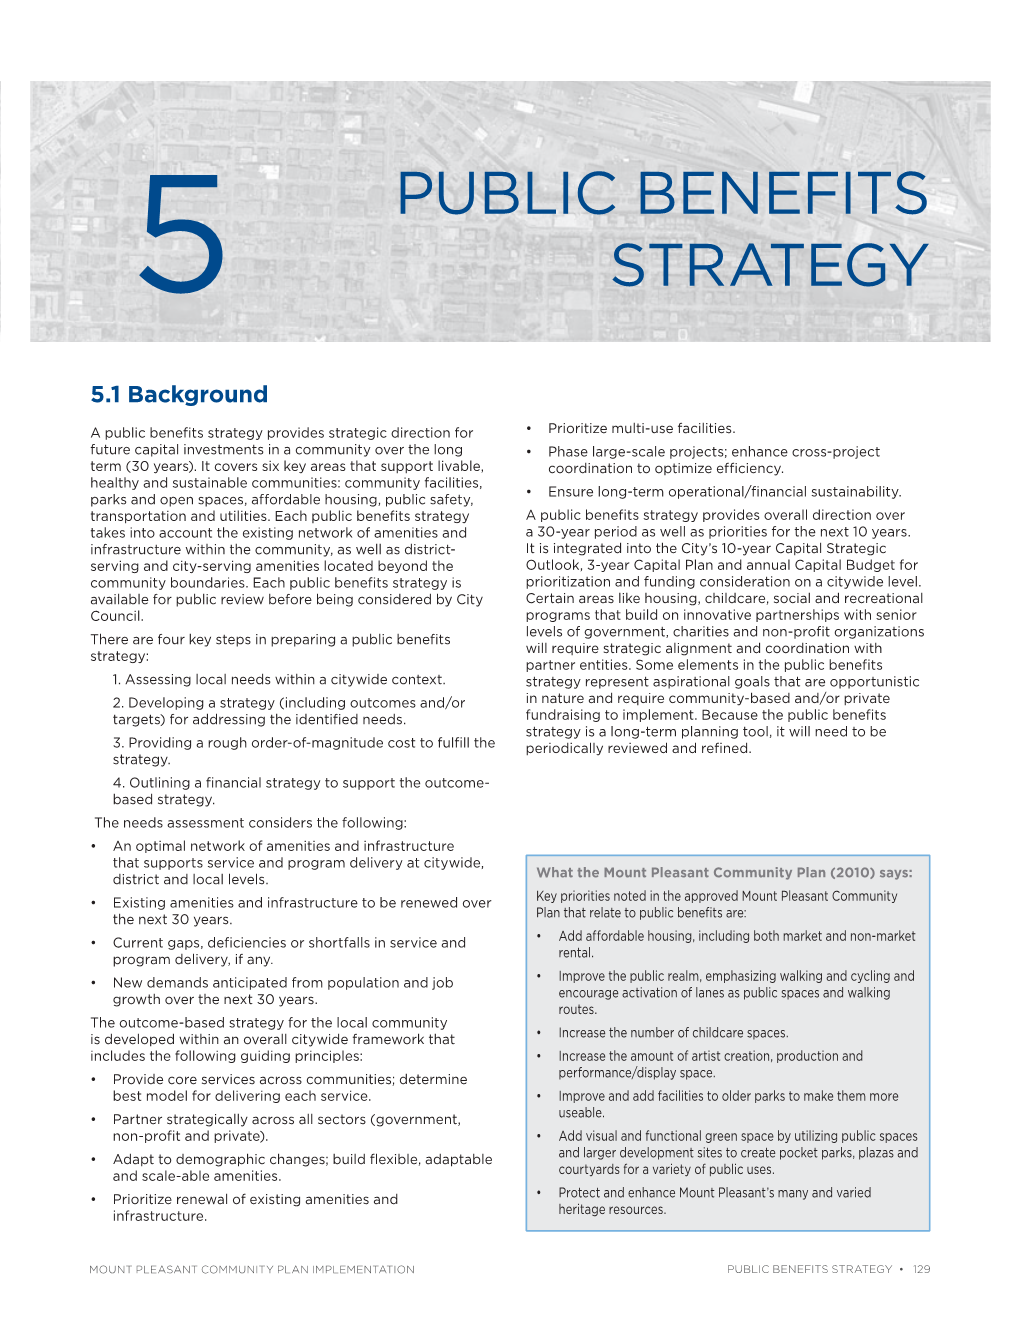 Mount Pleasant Community Plan Implementation, Part 5: Public Benefits Strategy